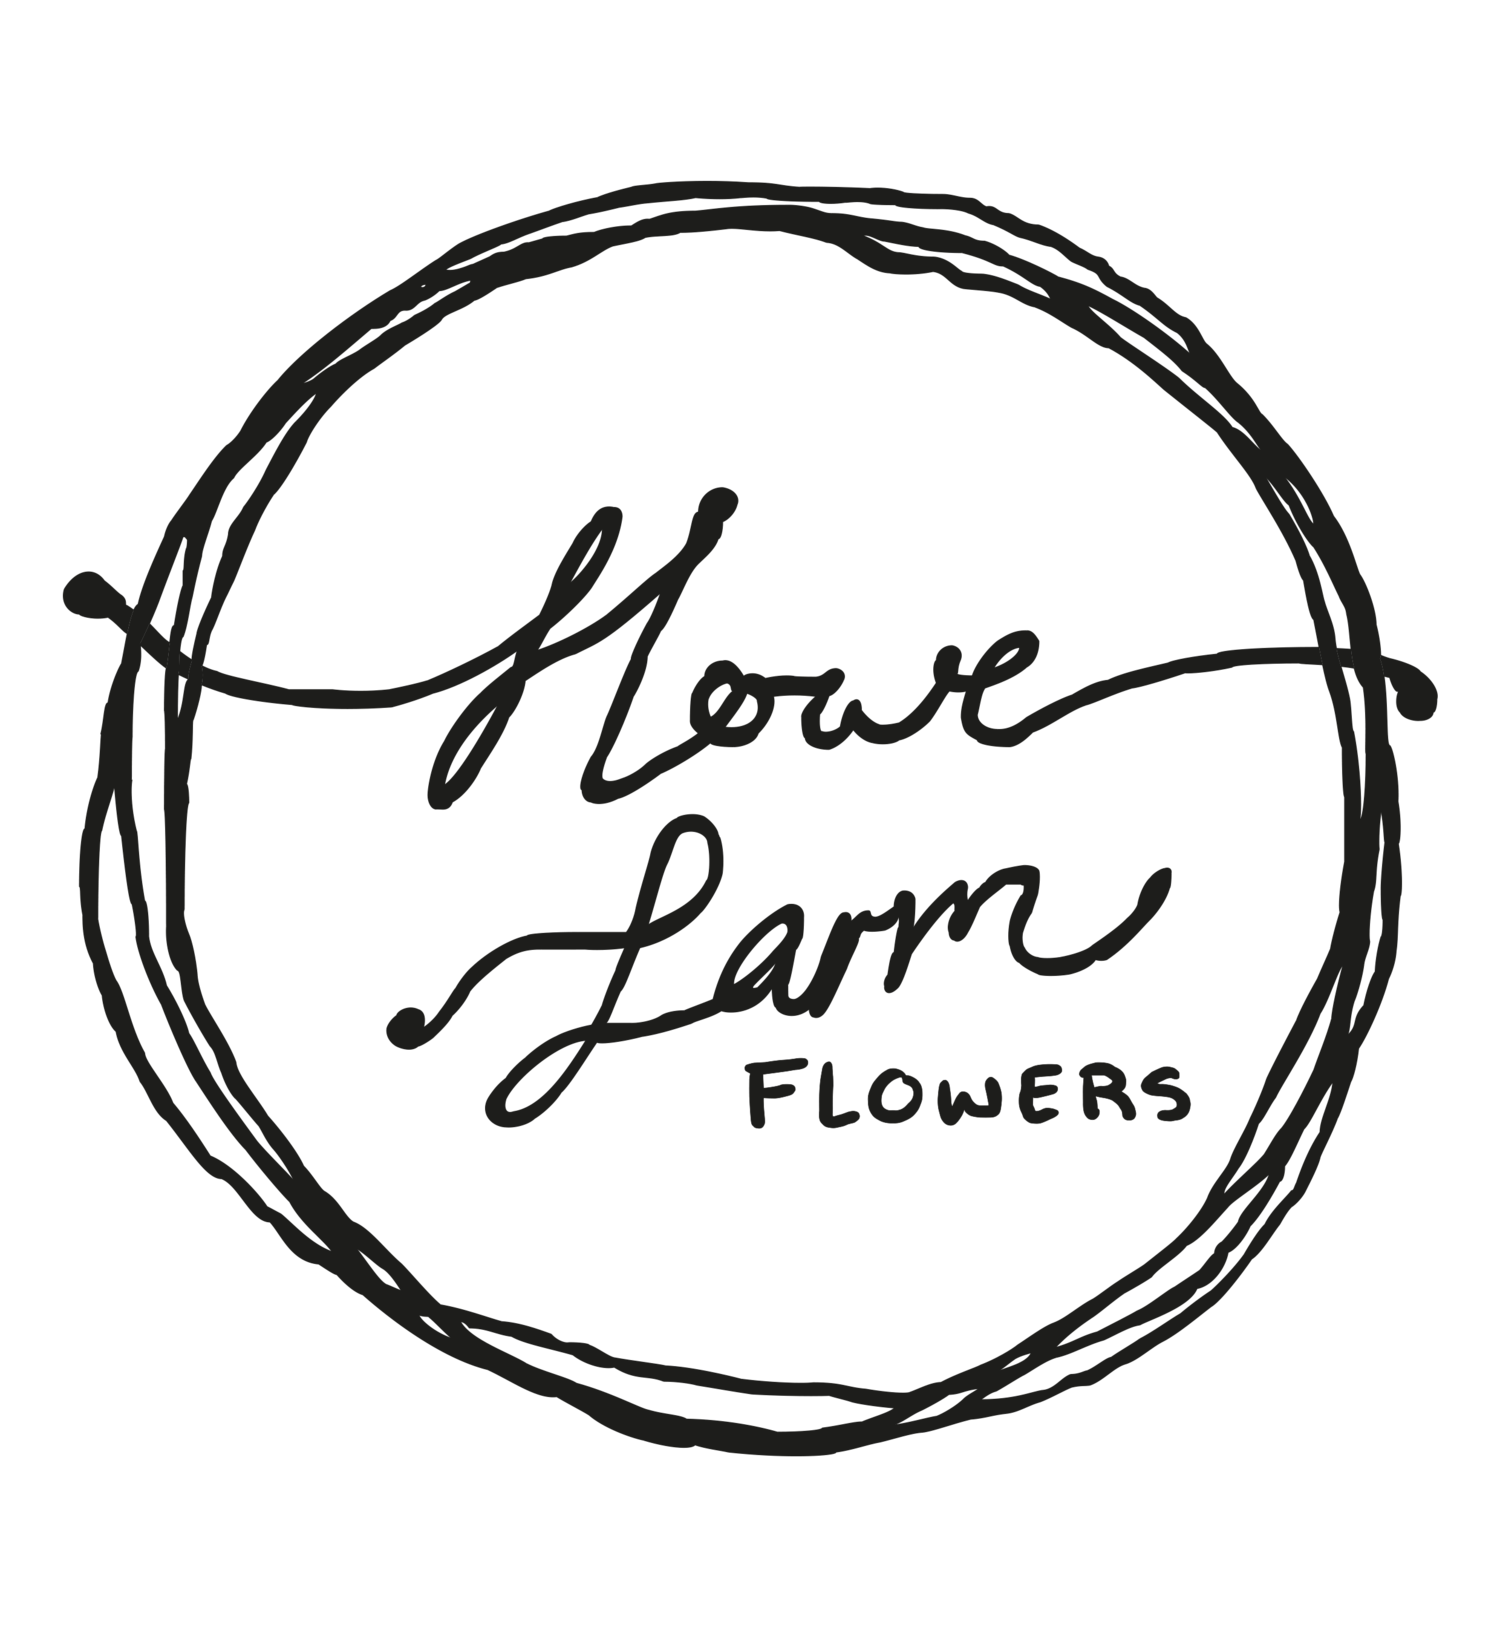 Howe Farm Flowers